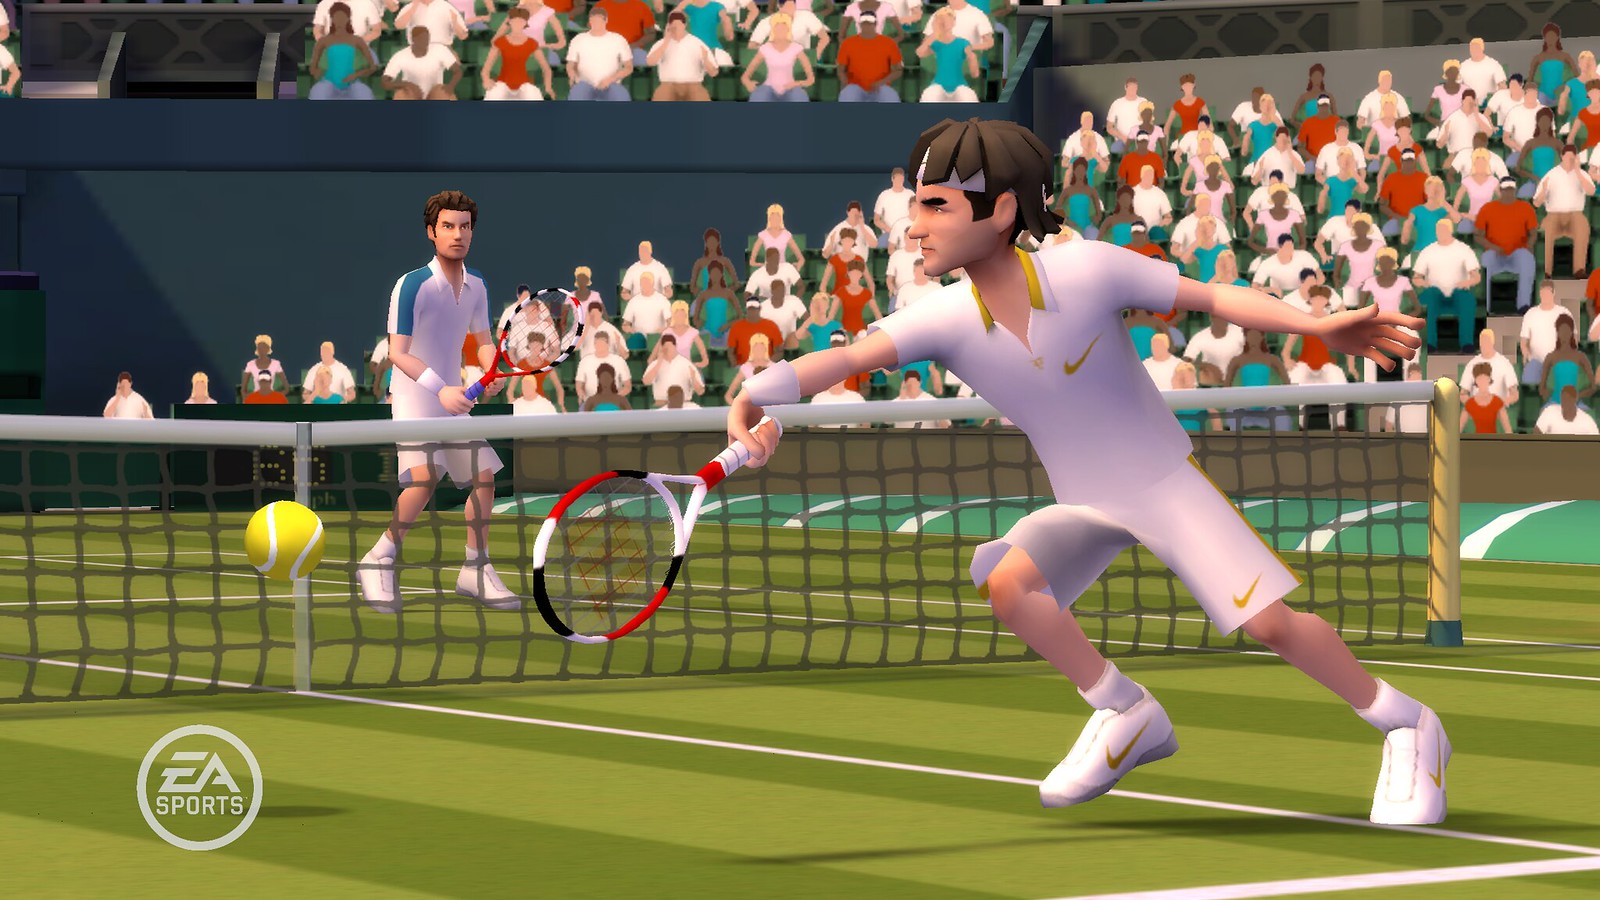 Включи игры теннис. Игра в теннис. Гранд-слэм теннис. Wii Tennis. EA Sports Grand Slam Tennis.